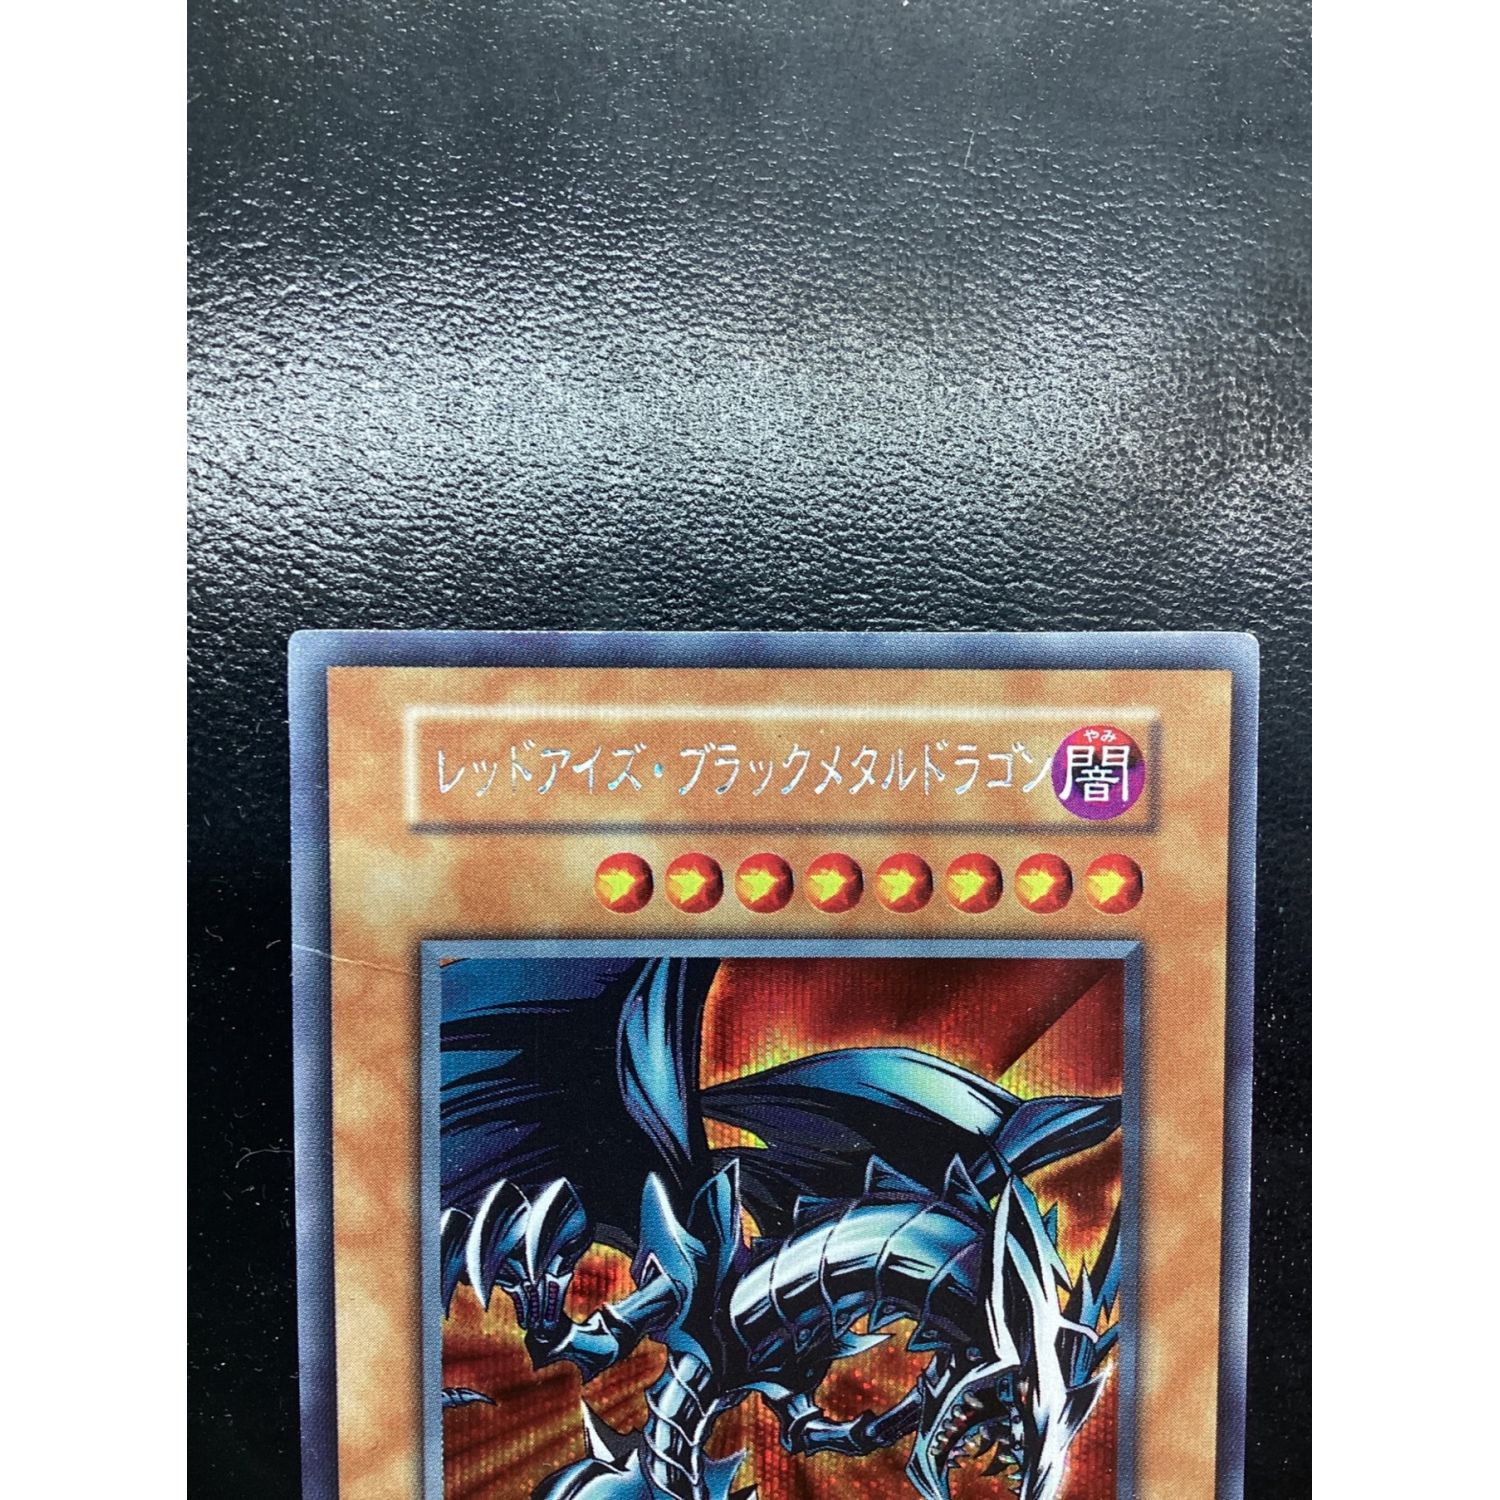 遊戯王カード 初期 レッドアイズ・ブラックメタルドラゴン 